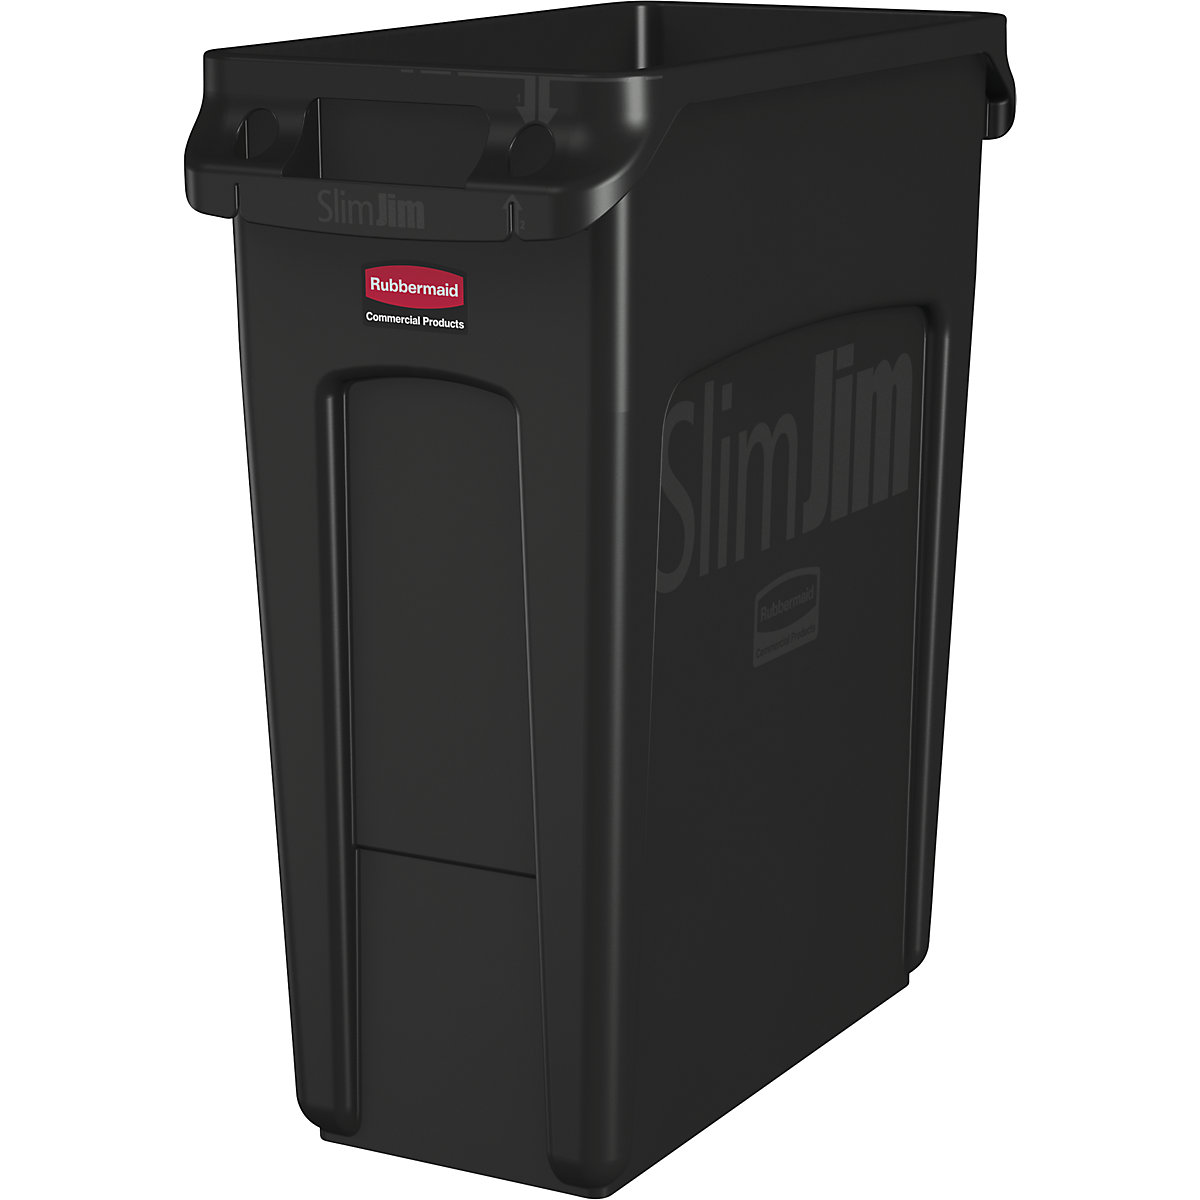 Coletor de materiais recicláveis/balde do lixo SLIM JIM® – Rubbermaid, volume 87 l, com canais de ventilação, preto-10